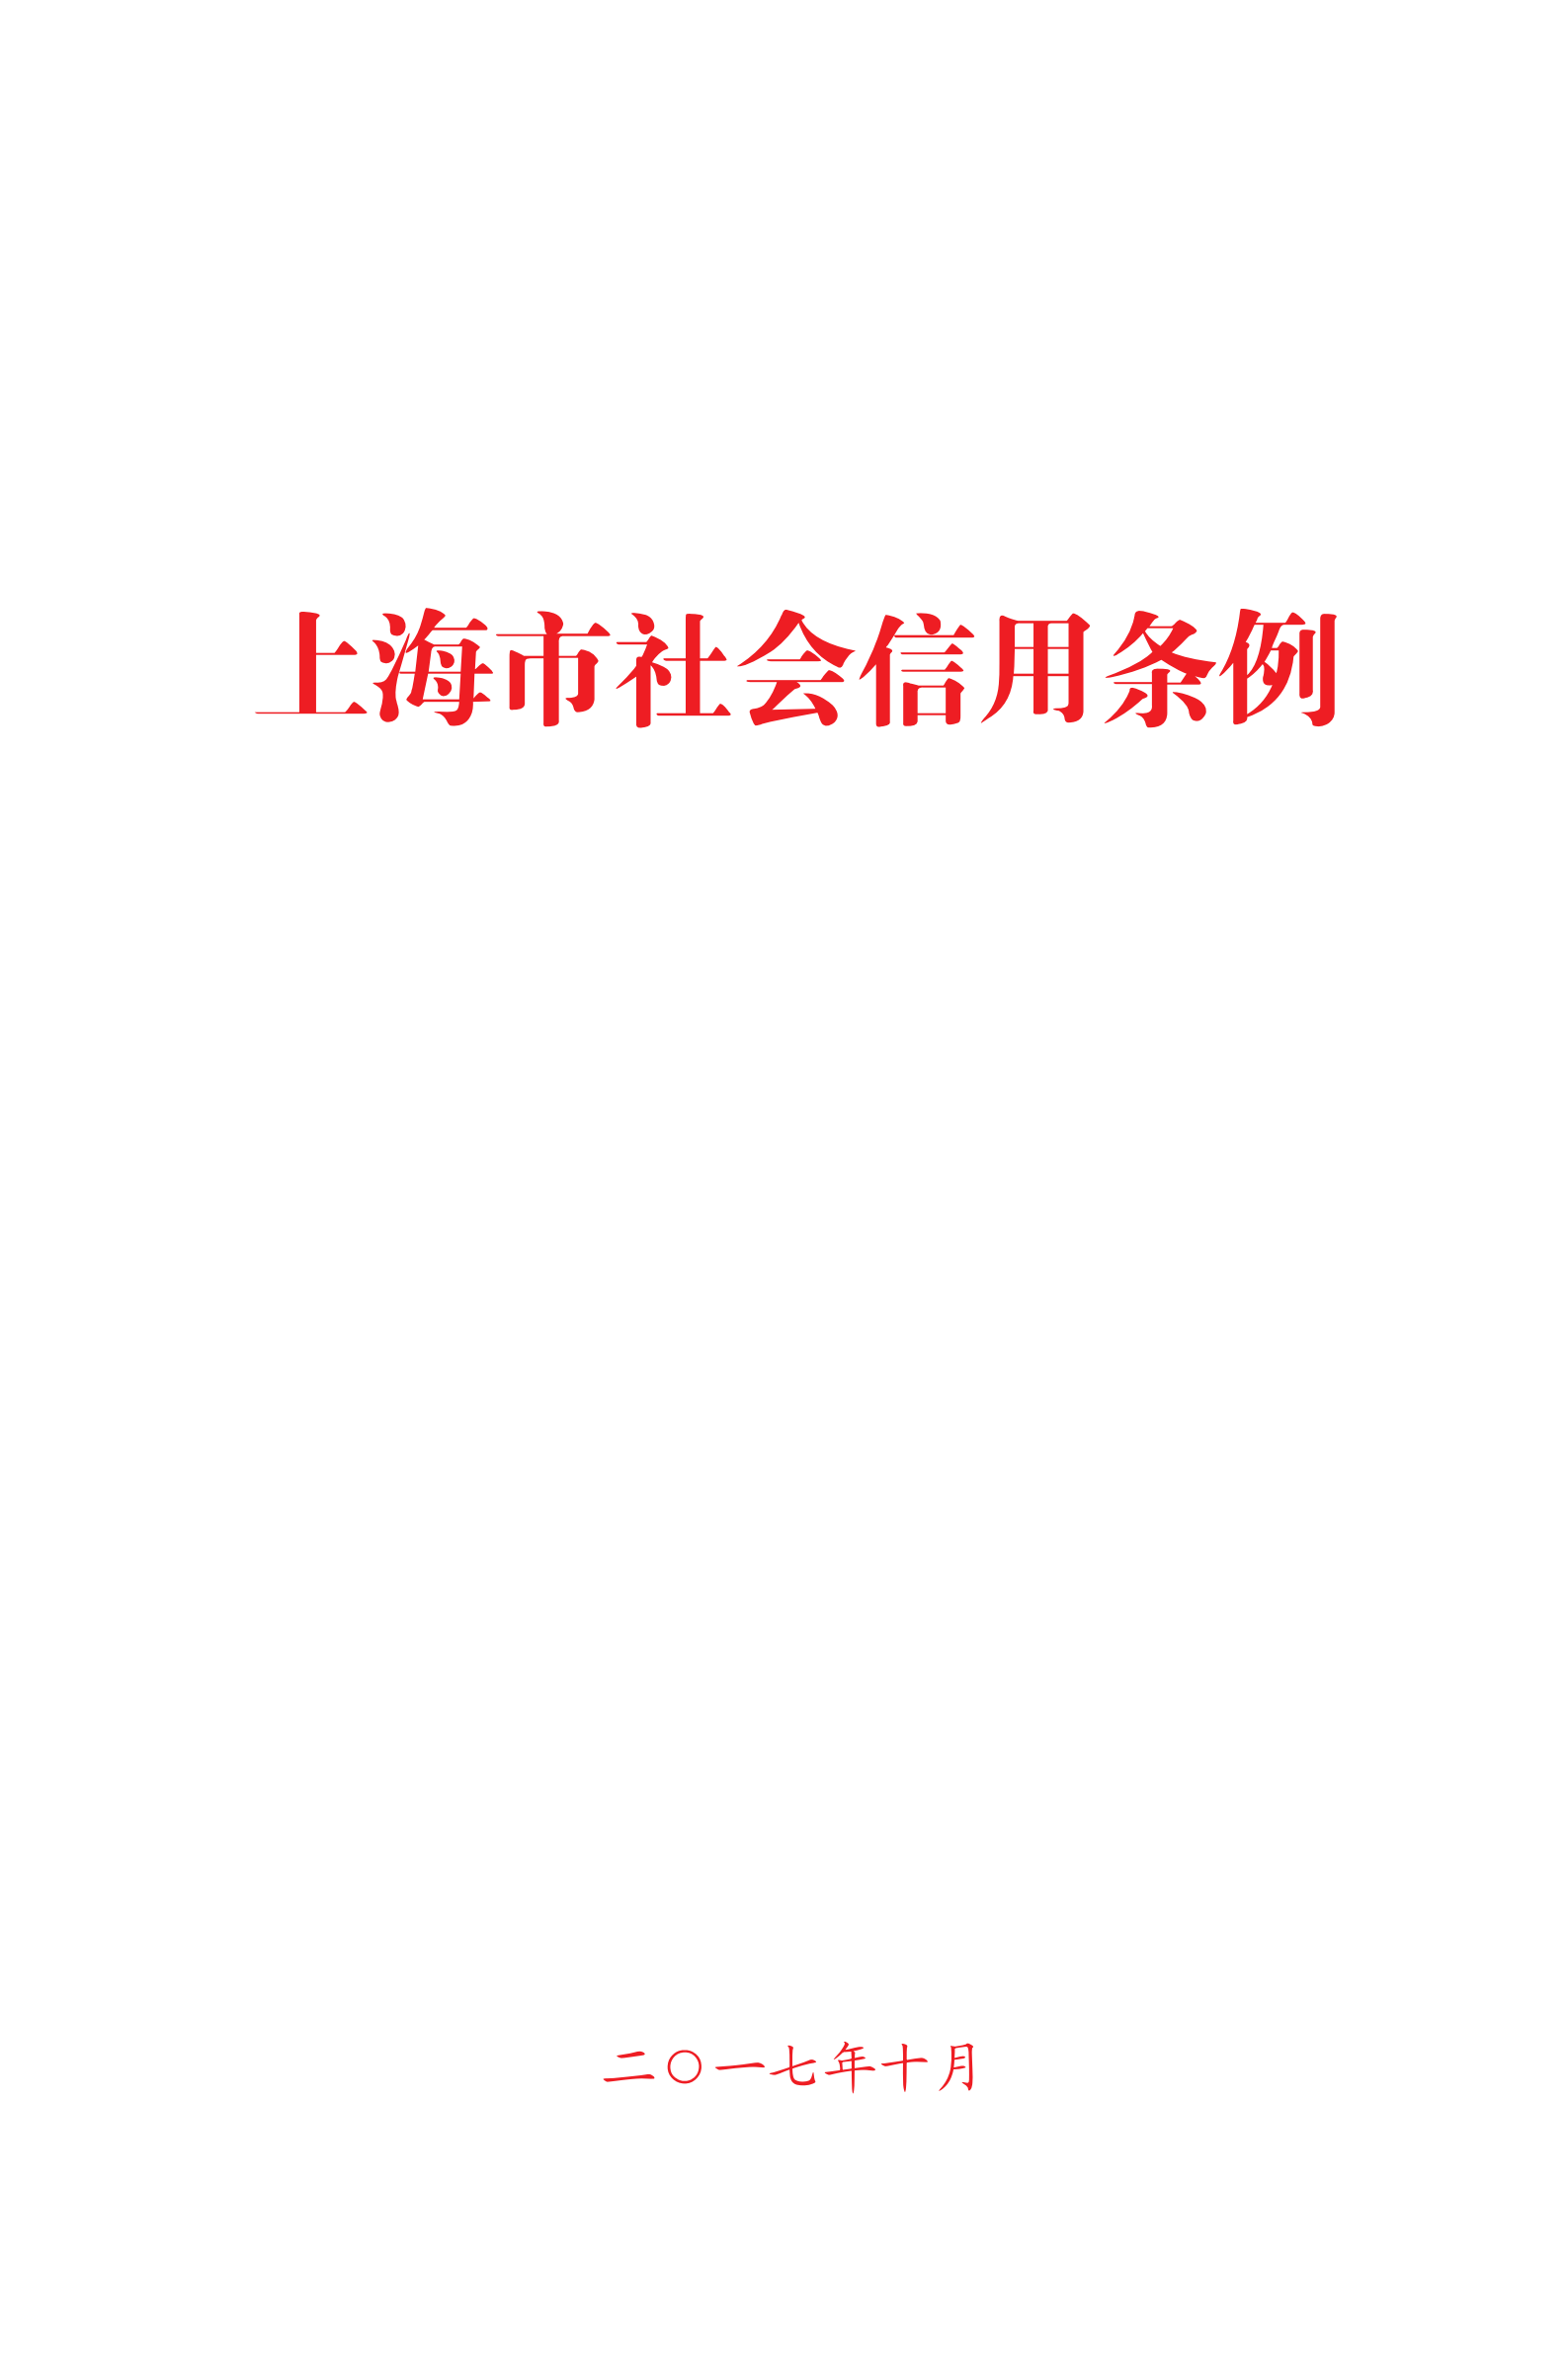 上海市社会信用条例_00.png